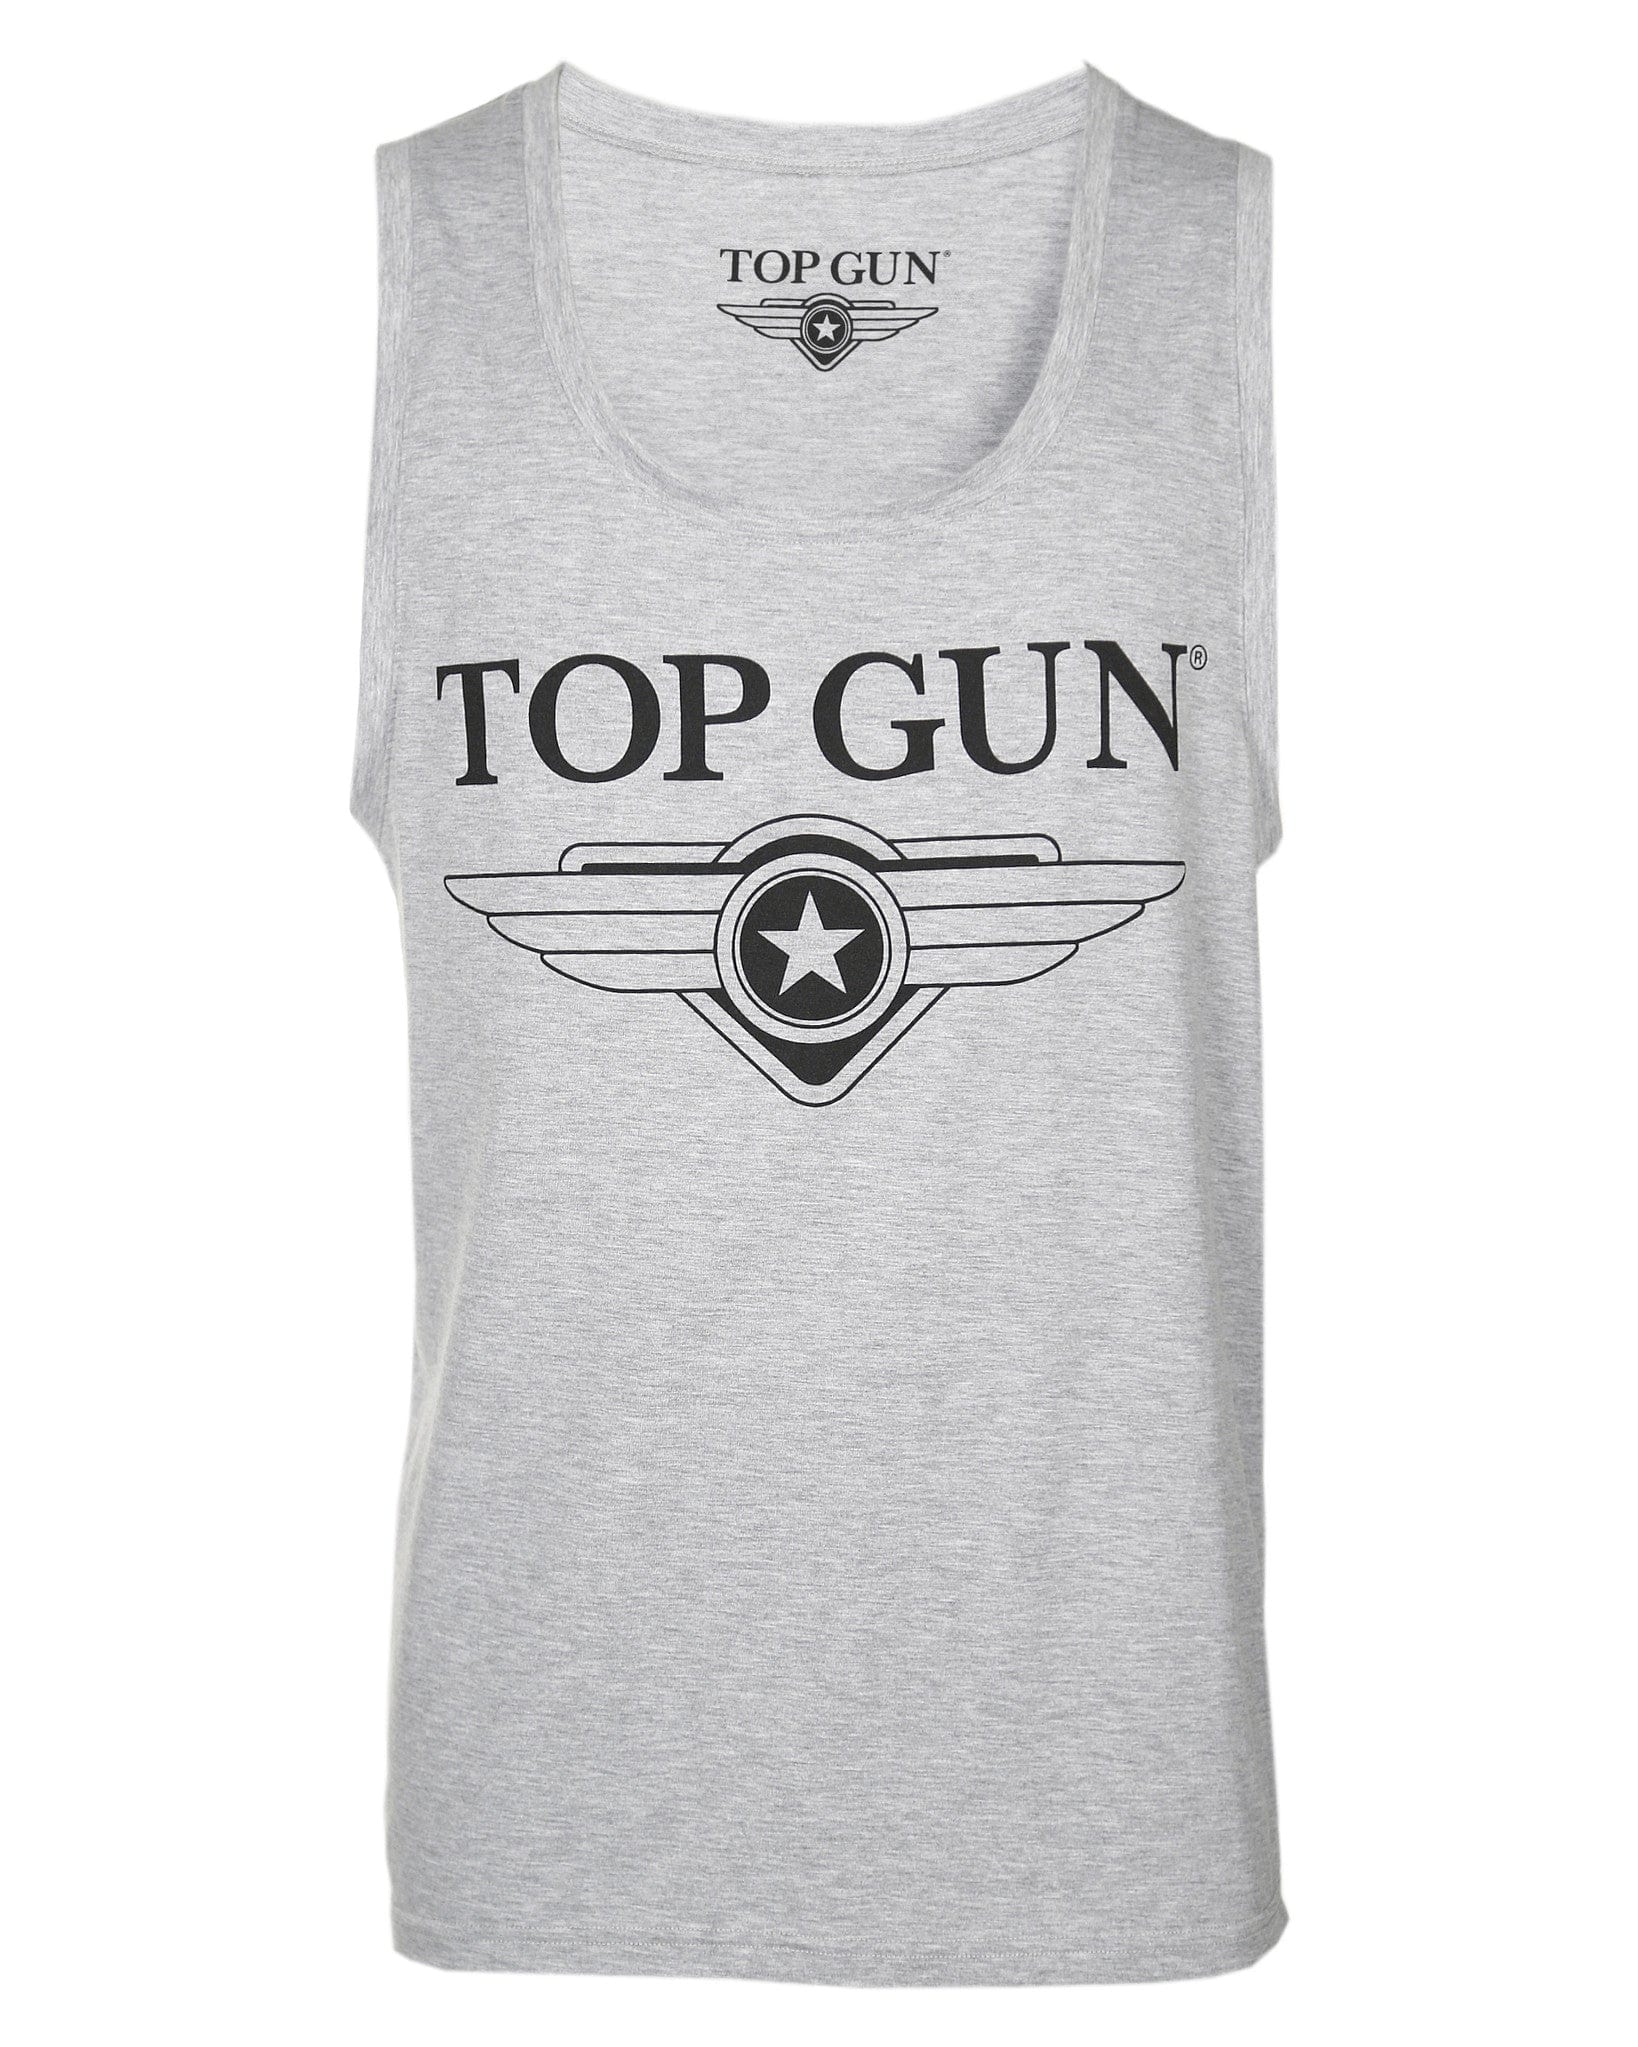 Top Gun"Truck" Tank Top